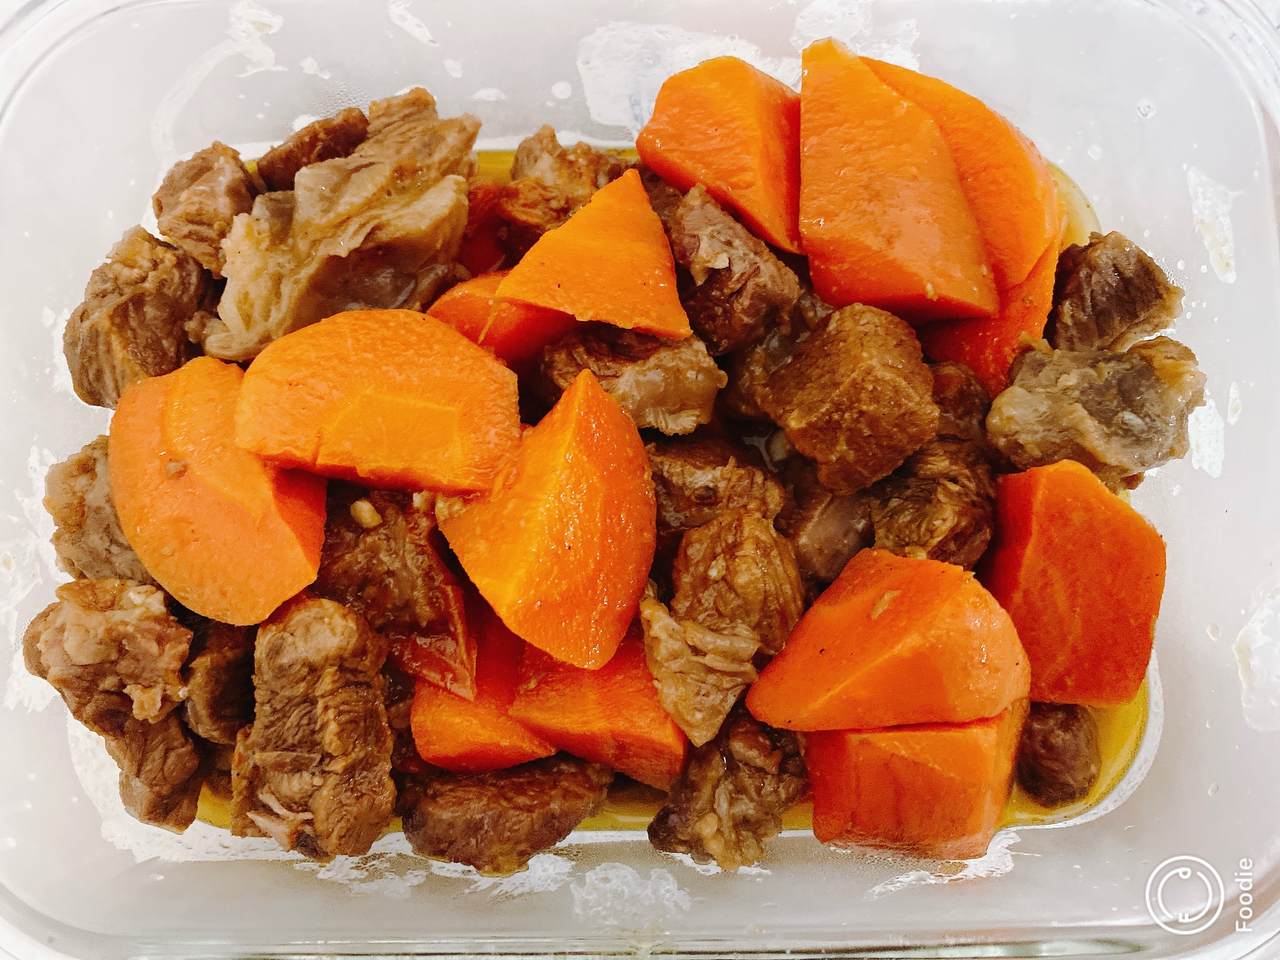 胡萝卜炖牛肉